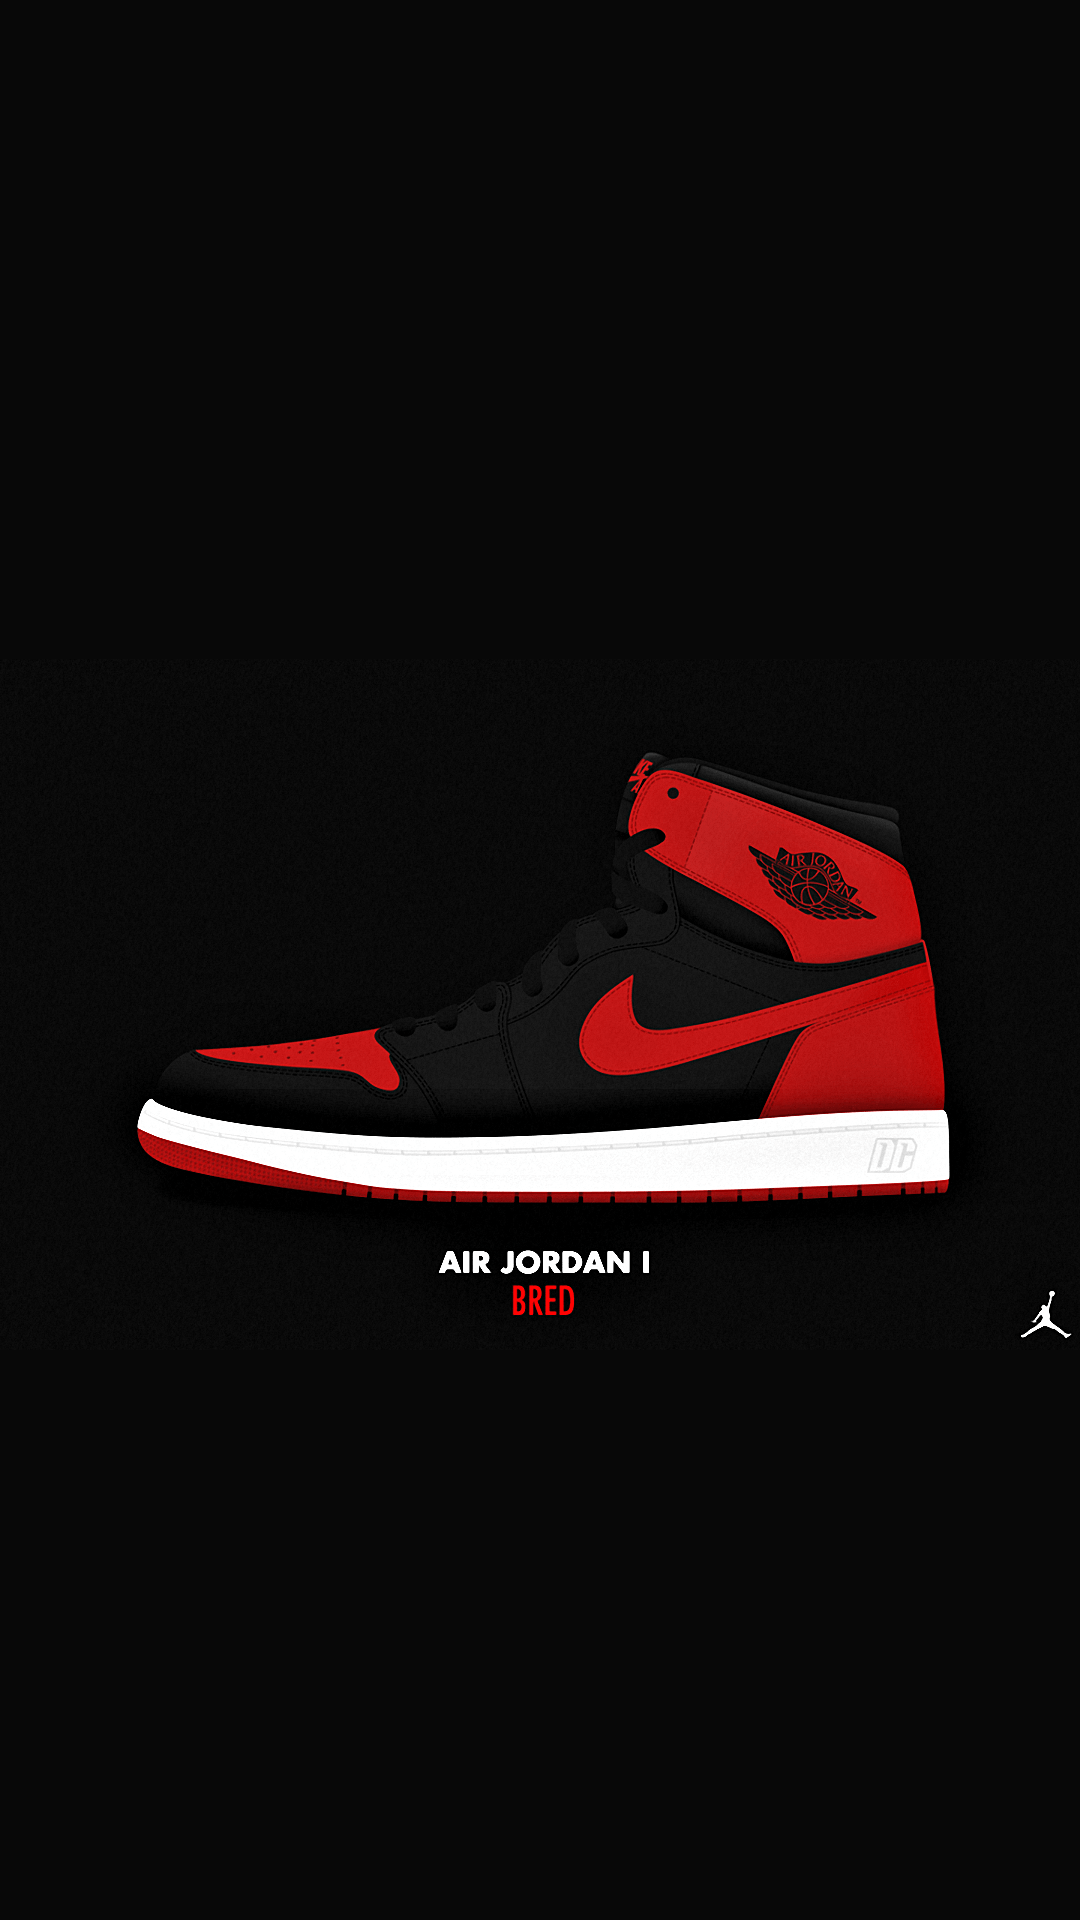 Air Jordan iPhone Wallpaper